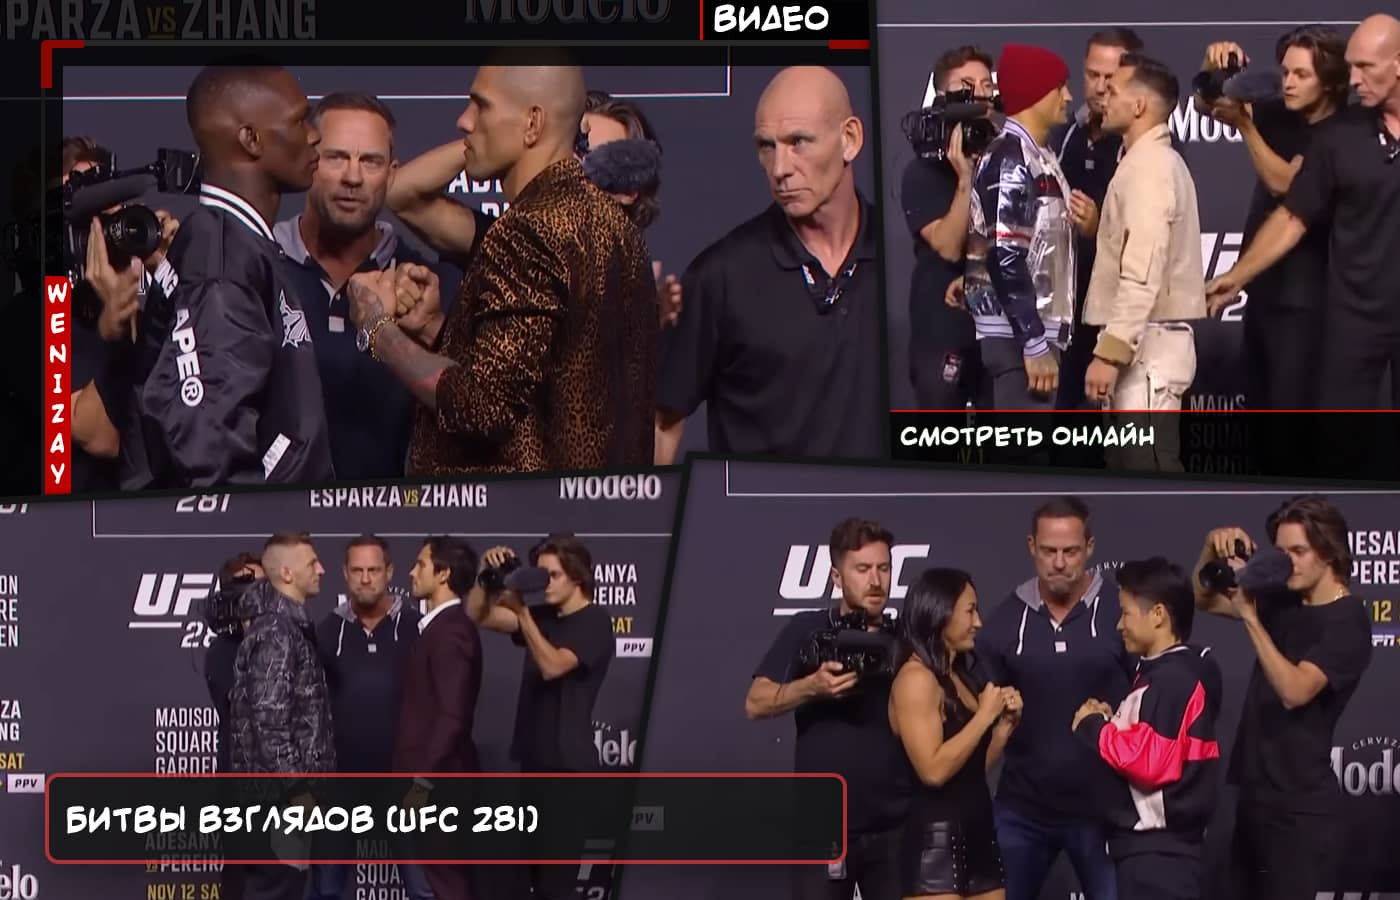 Битвы взглядов после пресс-конференции (UFC 281) - смотреть видео